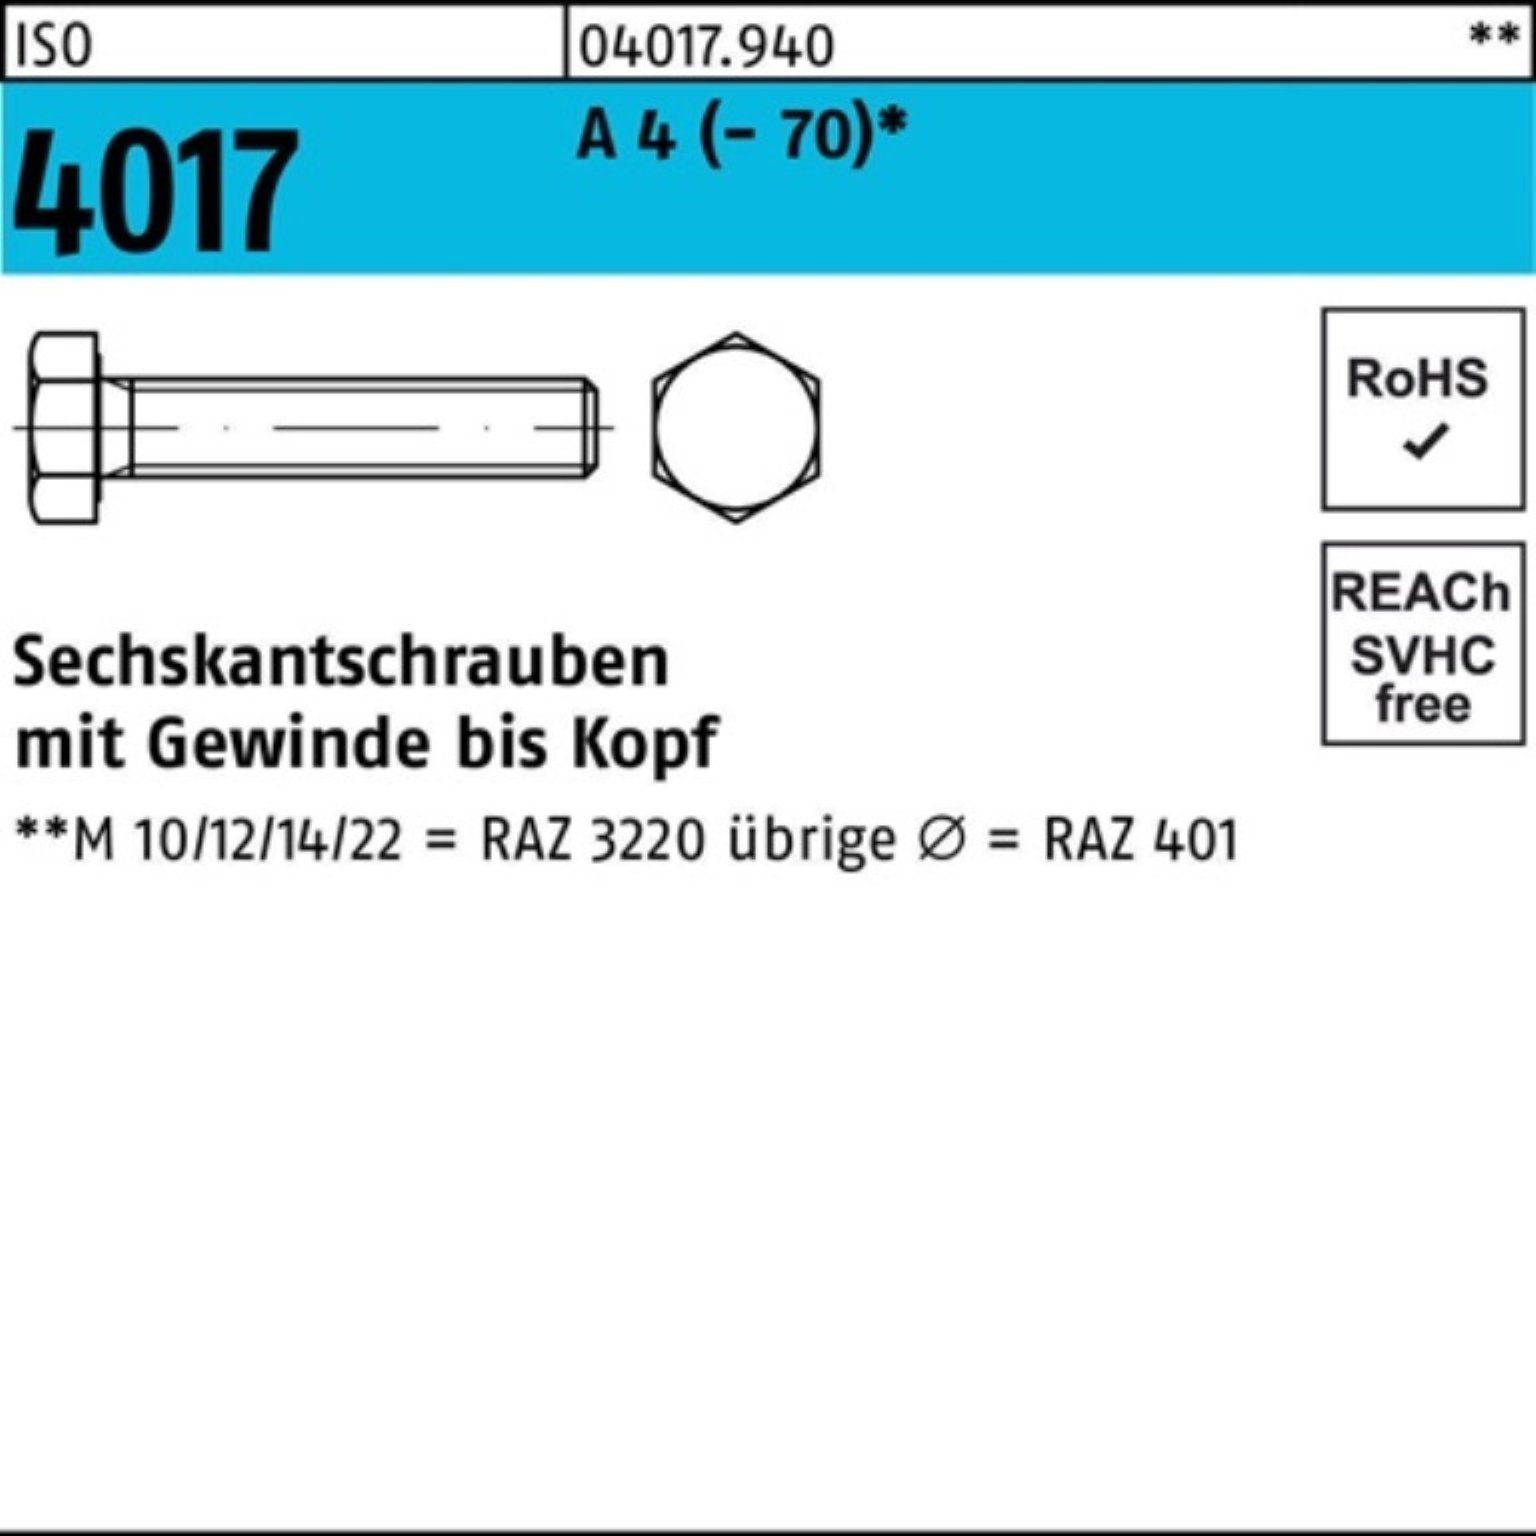 Bufab Sechskantschraube 100er Pack Sechskantschraube ISO 4017 VG M16x 65 A 4 (70) 25 Stück